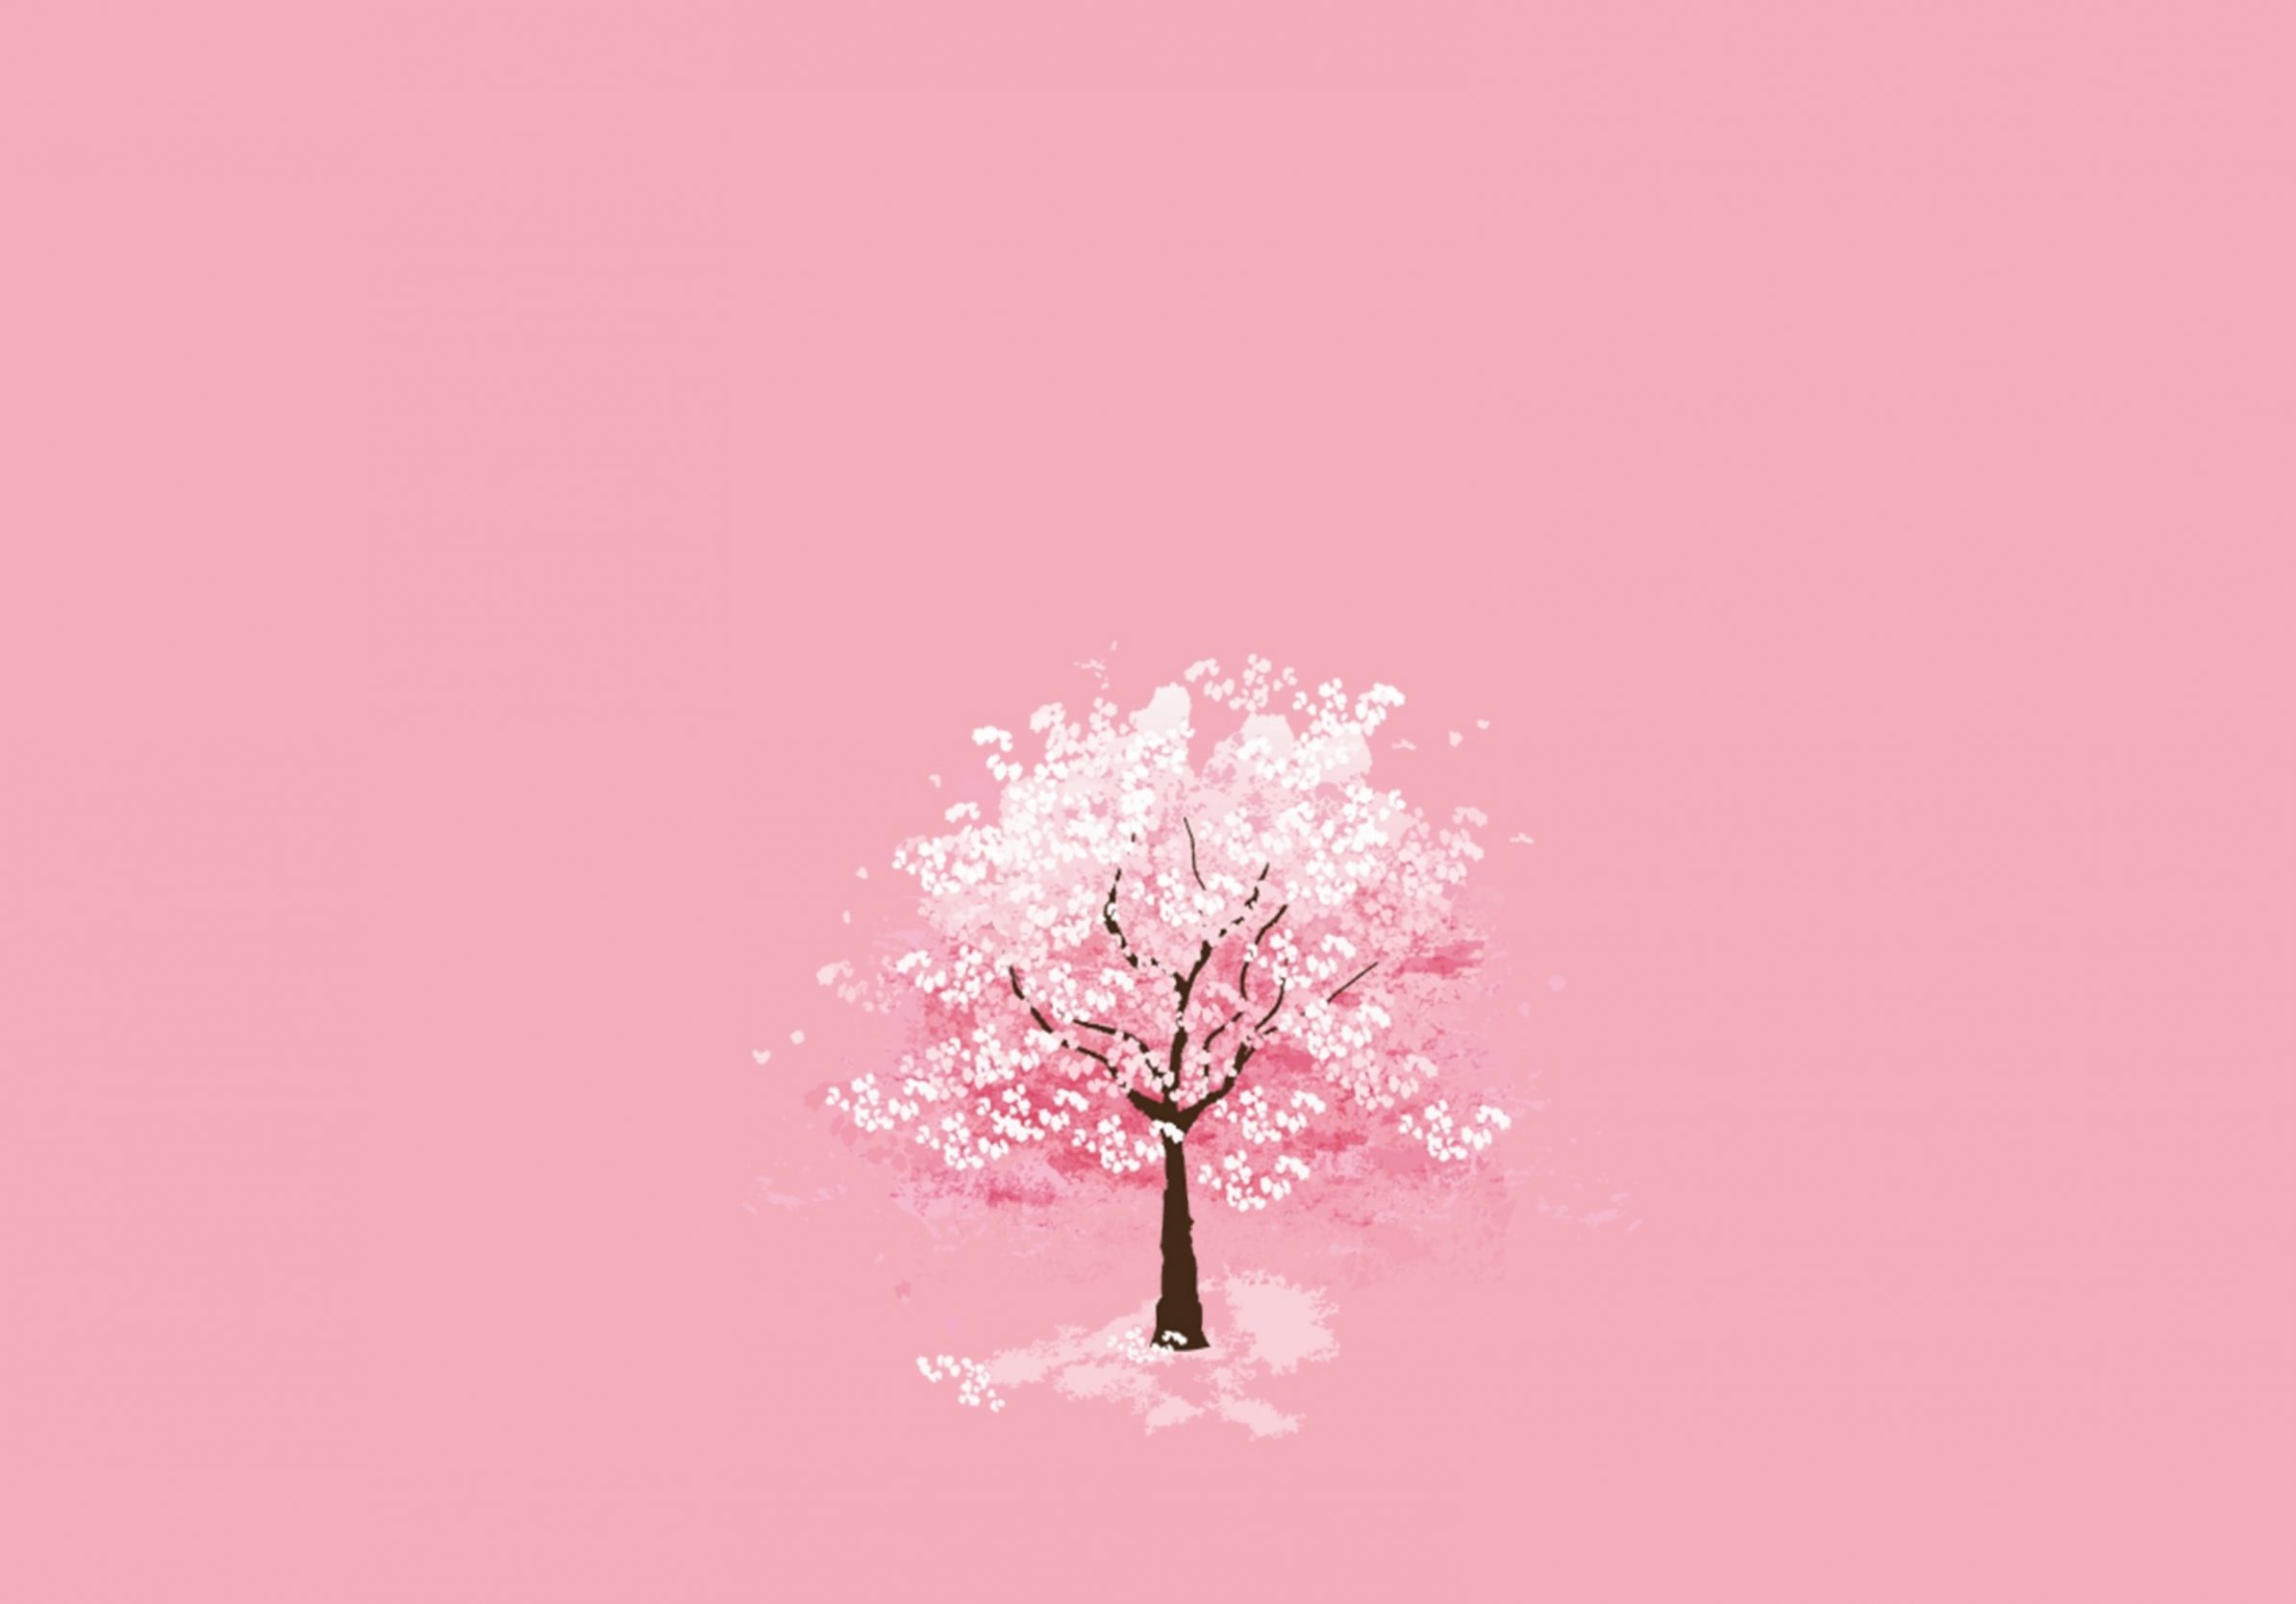 2388x1668 iPad Pro wallpapers Winter Season Tree Pink Background iPad Wallpaper 2388x1668 pixels resolution